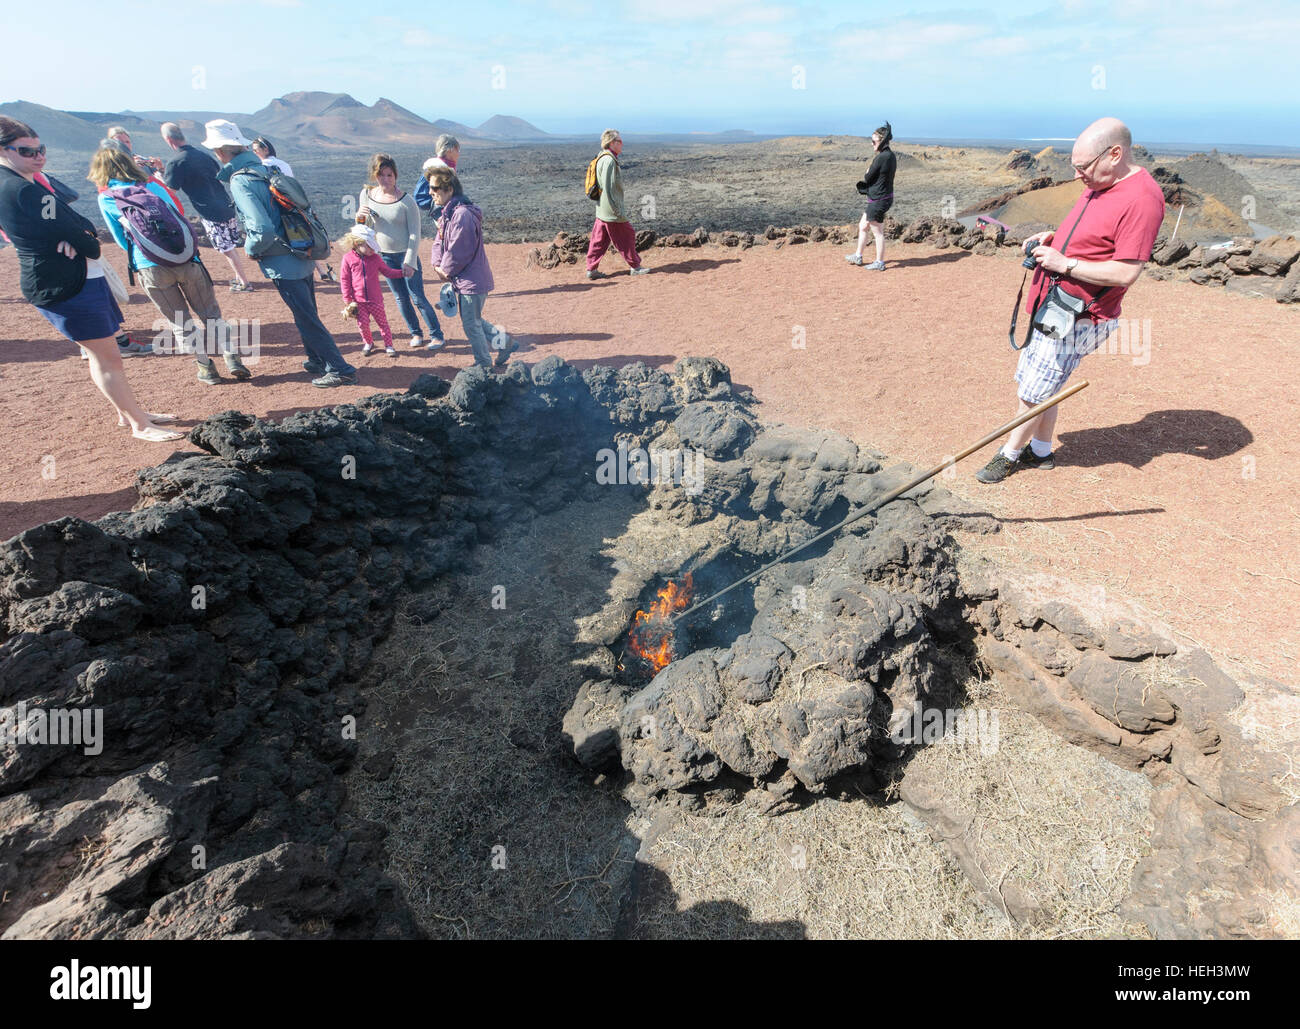 Les touristes regarder broussailles brûler dans un évent volcanique dans le Parc National de Timanfaya, Montañas del Fuego (Montagnes de Feu) dans Lazarote, Canaries, Espagne Banque D'Images